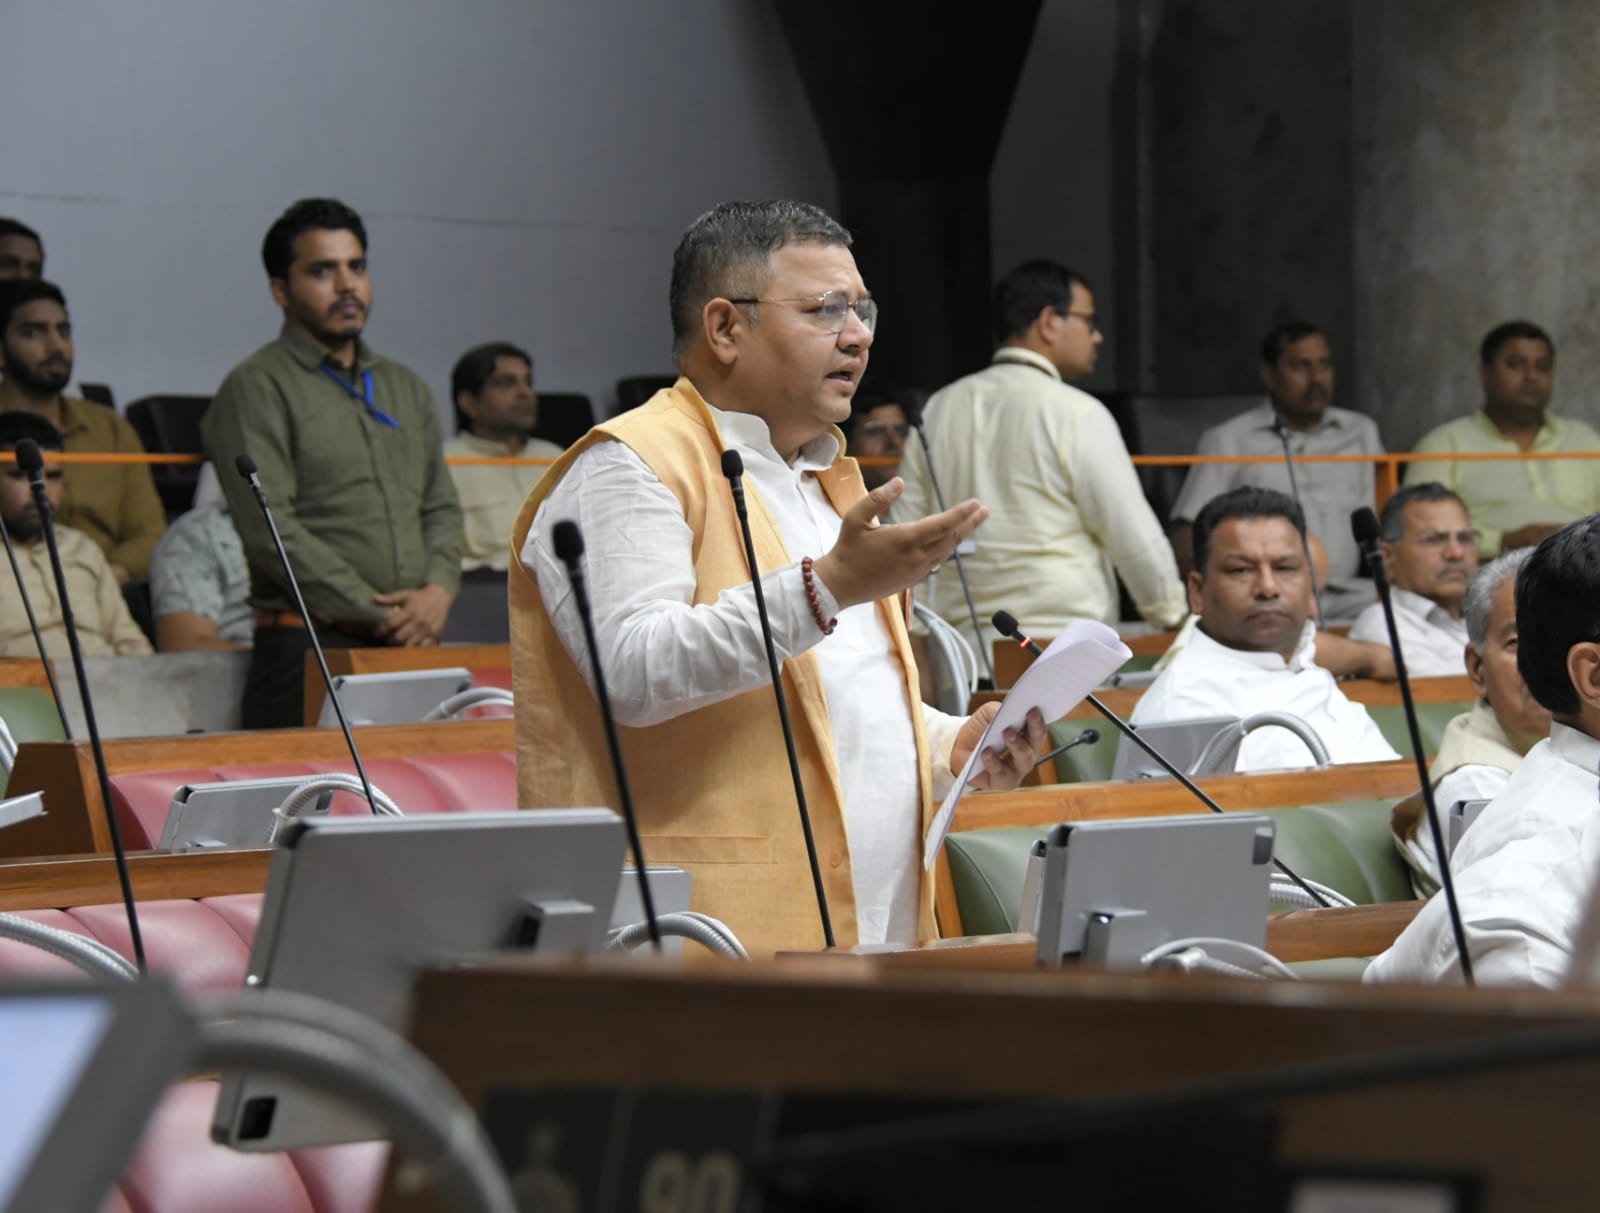 बजट में गुडगांव-फरीदाबाद मेट्रो के लिए एक रू भी नही दिया गया: कांग्रेस MLA नीरज शर्मा